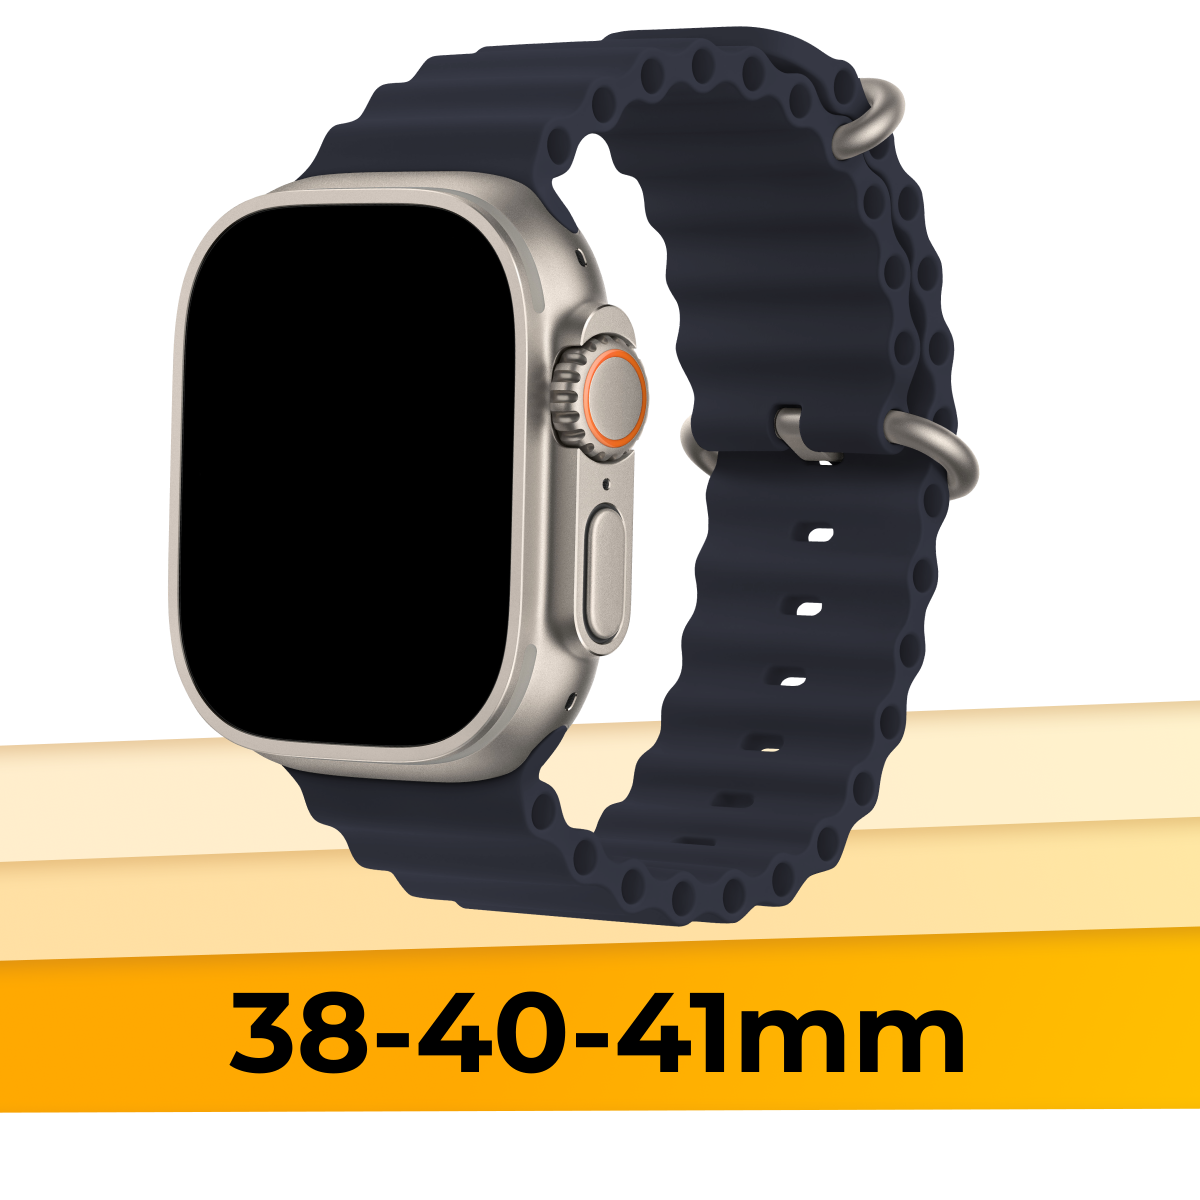 Силиконовый браслет Ocean Band на смарт часы Apple Watch 1-9, SE, 38-40-41 mm / Сменный ремешок для Эпл Вотч 1-9, СЕ / Полночь